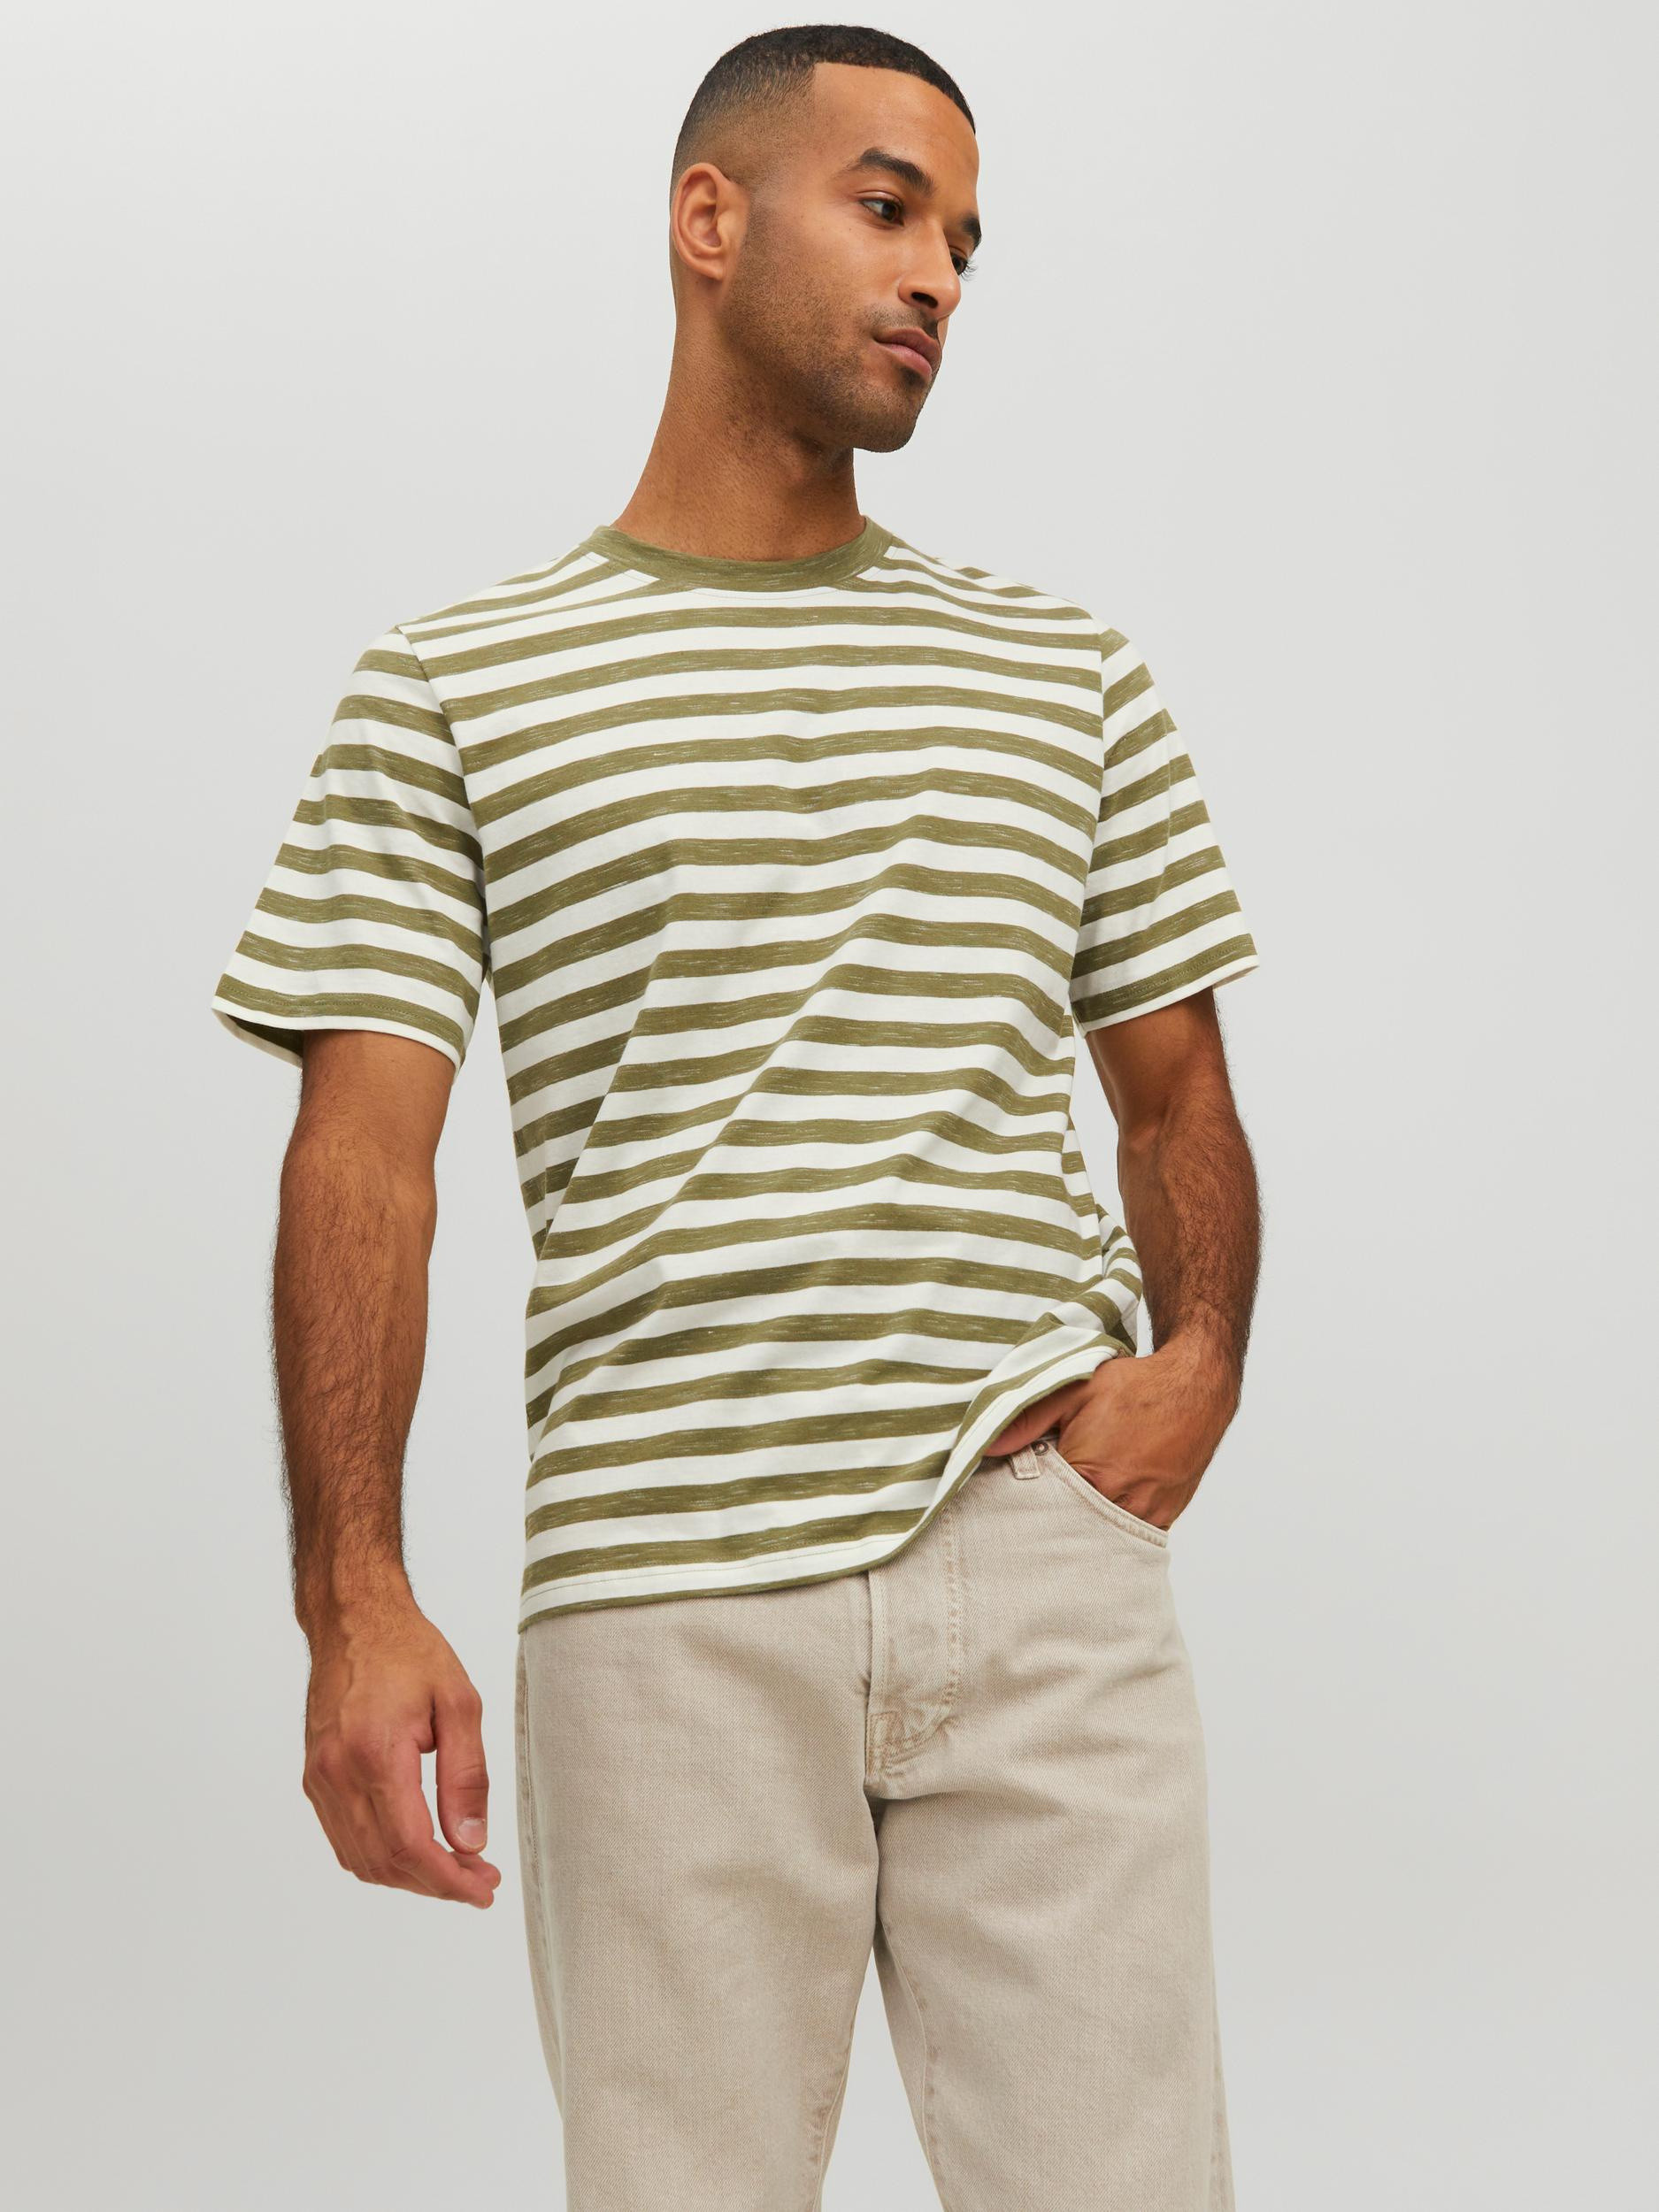 Jack & Jones - Striped T-Shirt, Light Green, large image number 1